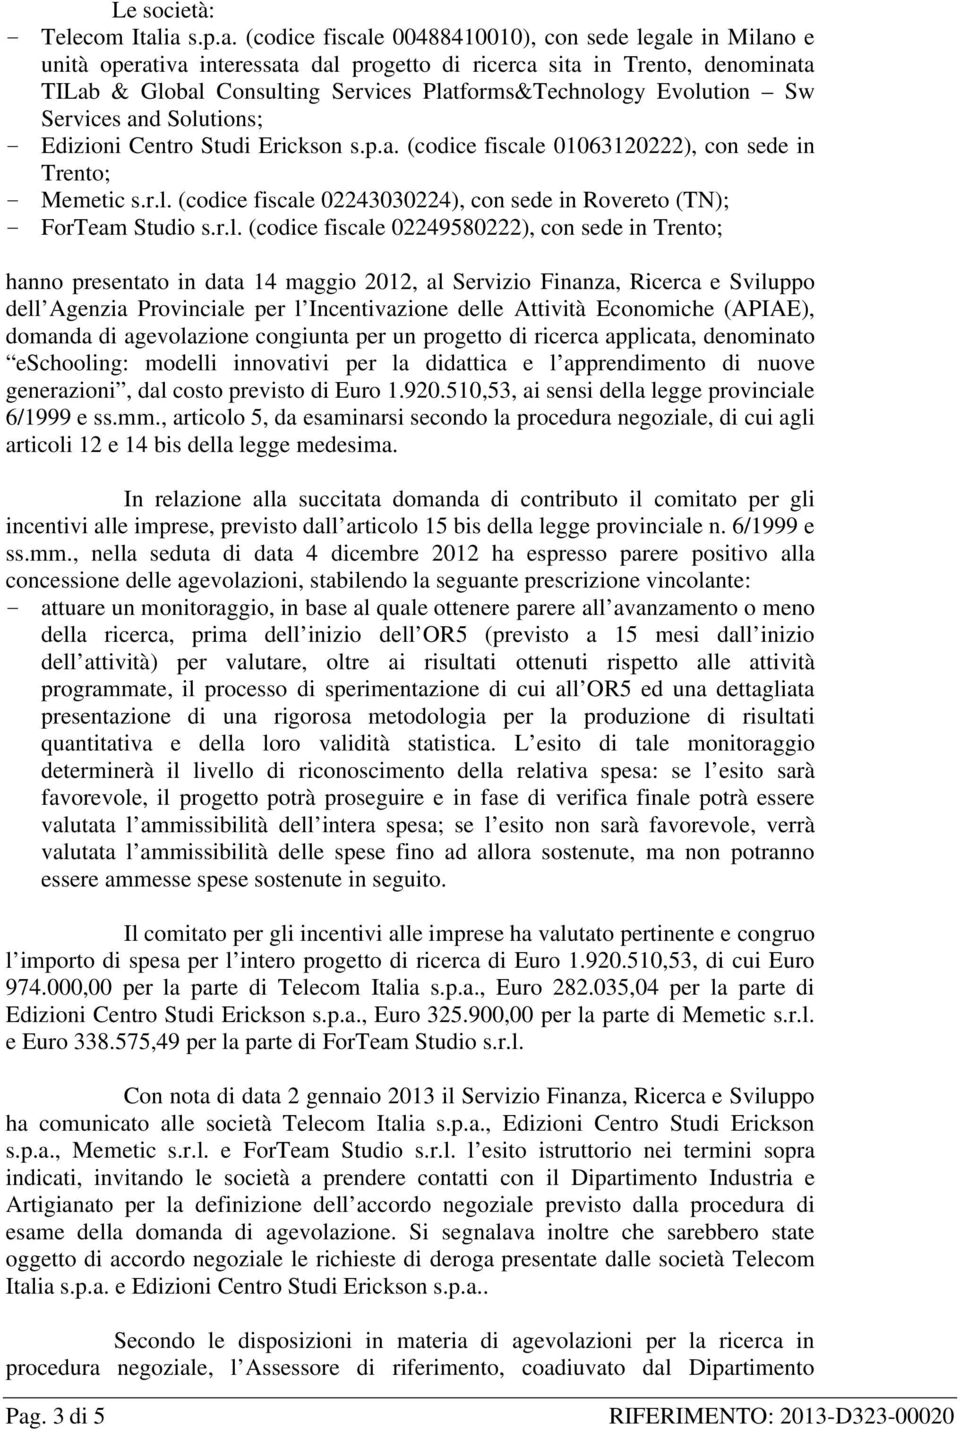 Platforms&Technology Evolution Sw Services and Solutions; Edizioni Centro Studi Erickson s.p.a. (codice fiscale 01063120222), con sede in Trento; Memetic s.r.l. (codice fiscale 02243030224), con sede in Rovereto (TN); ForTeam Studio s.